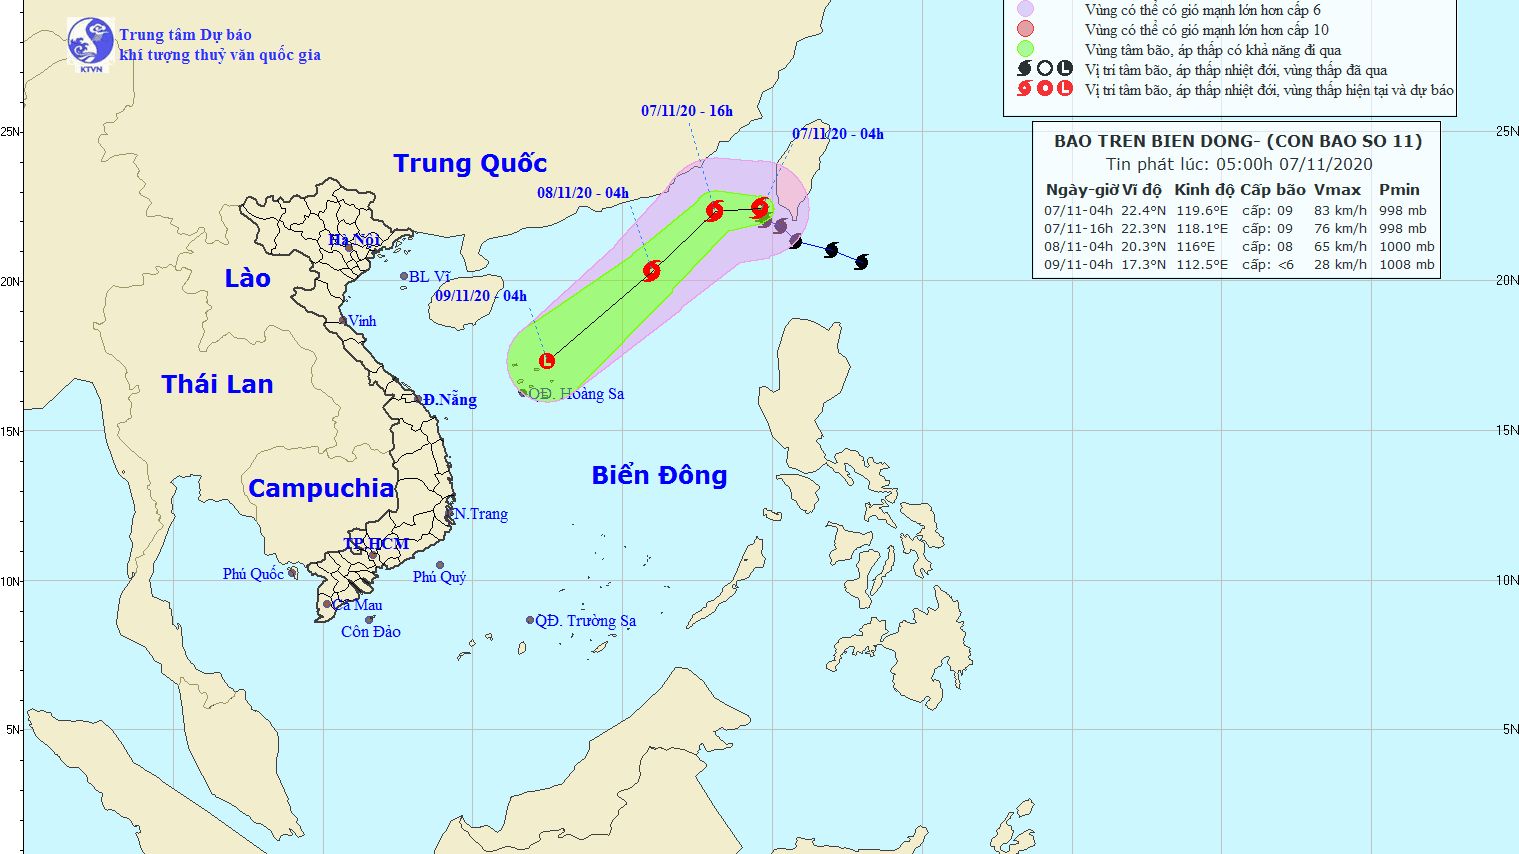 Dự báo thời tiết: Bão Atsani - Cơn bão số 11 đi vào Biển Đông, sức gió mạnh nhất vùng gần tâm bão cấp 8, giật trên cấp 10